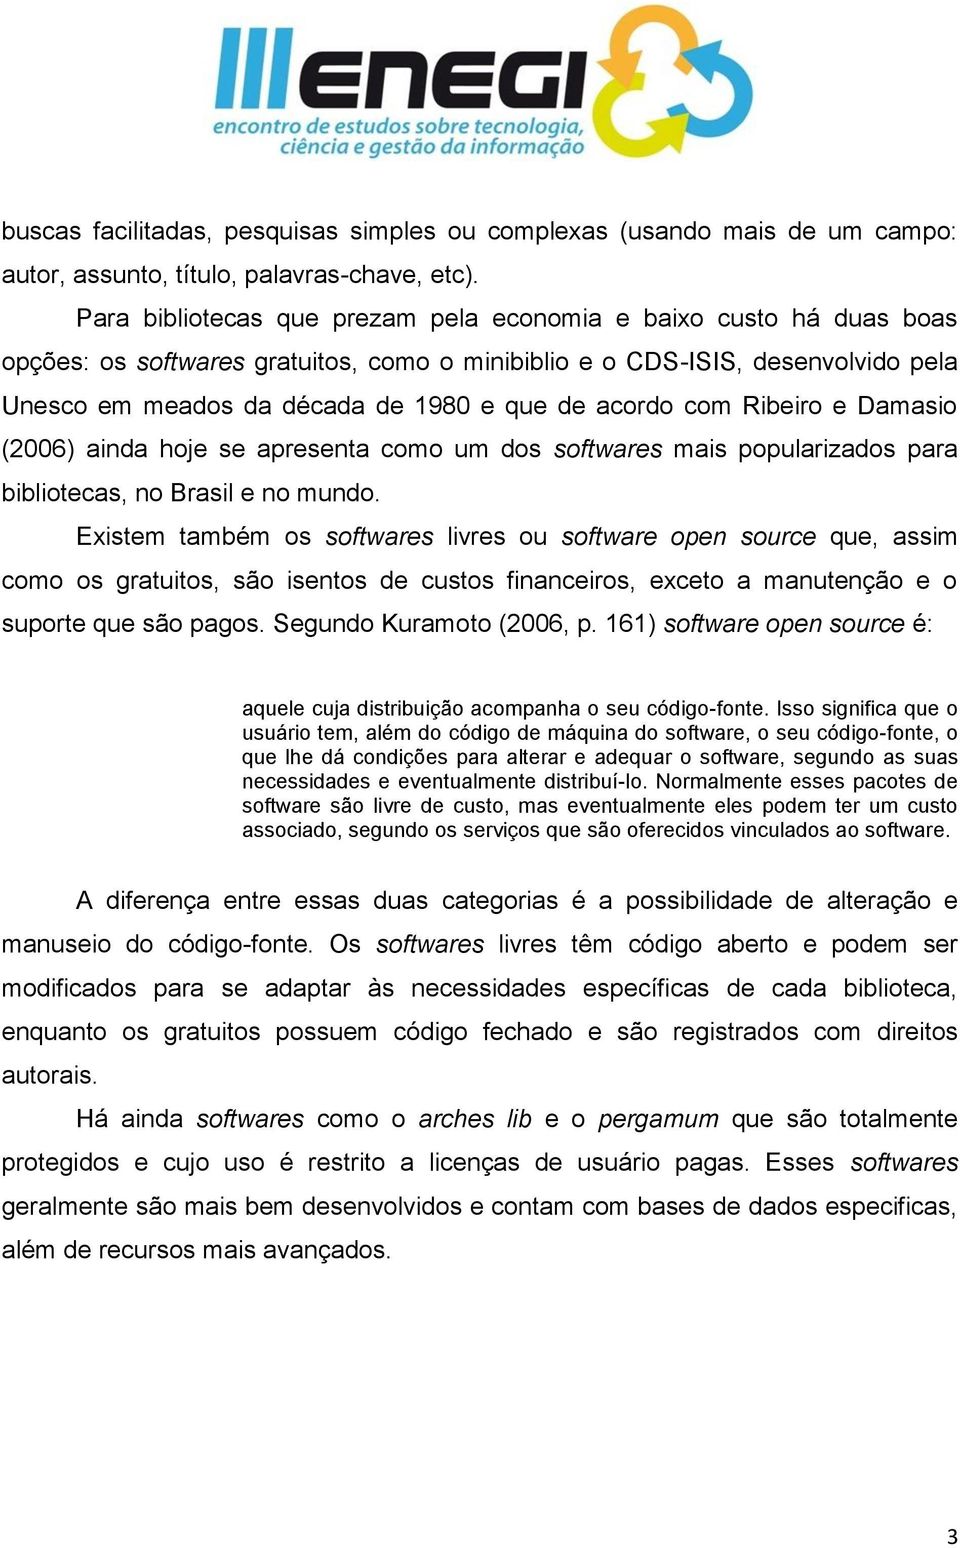 acordo com Ribeiro e Damasio (2006) ainda hoje se apresenta como um dos softwares mais popularizados para bibliotecas, no Brasil e no mundo.